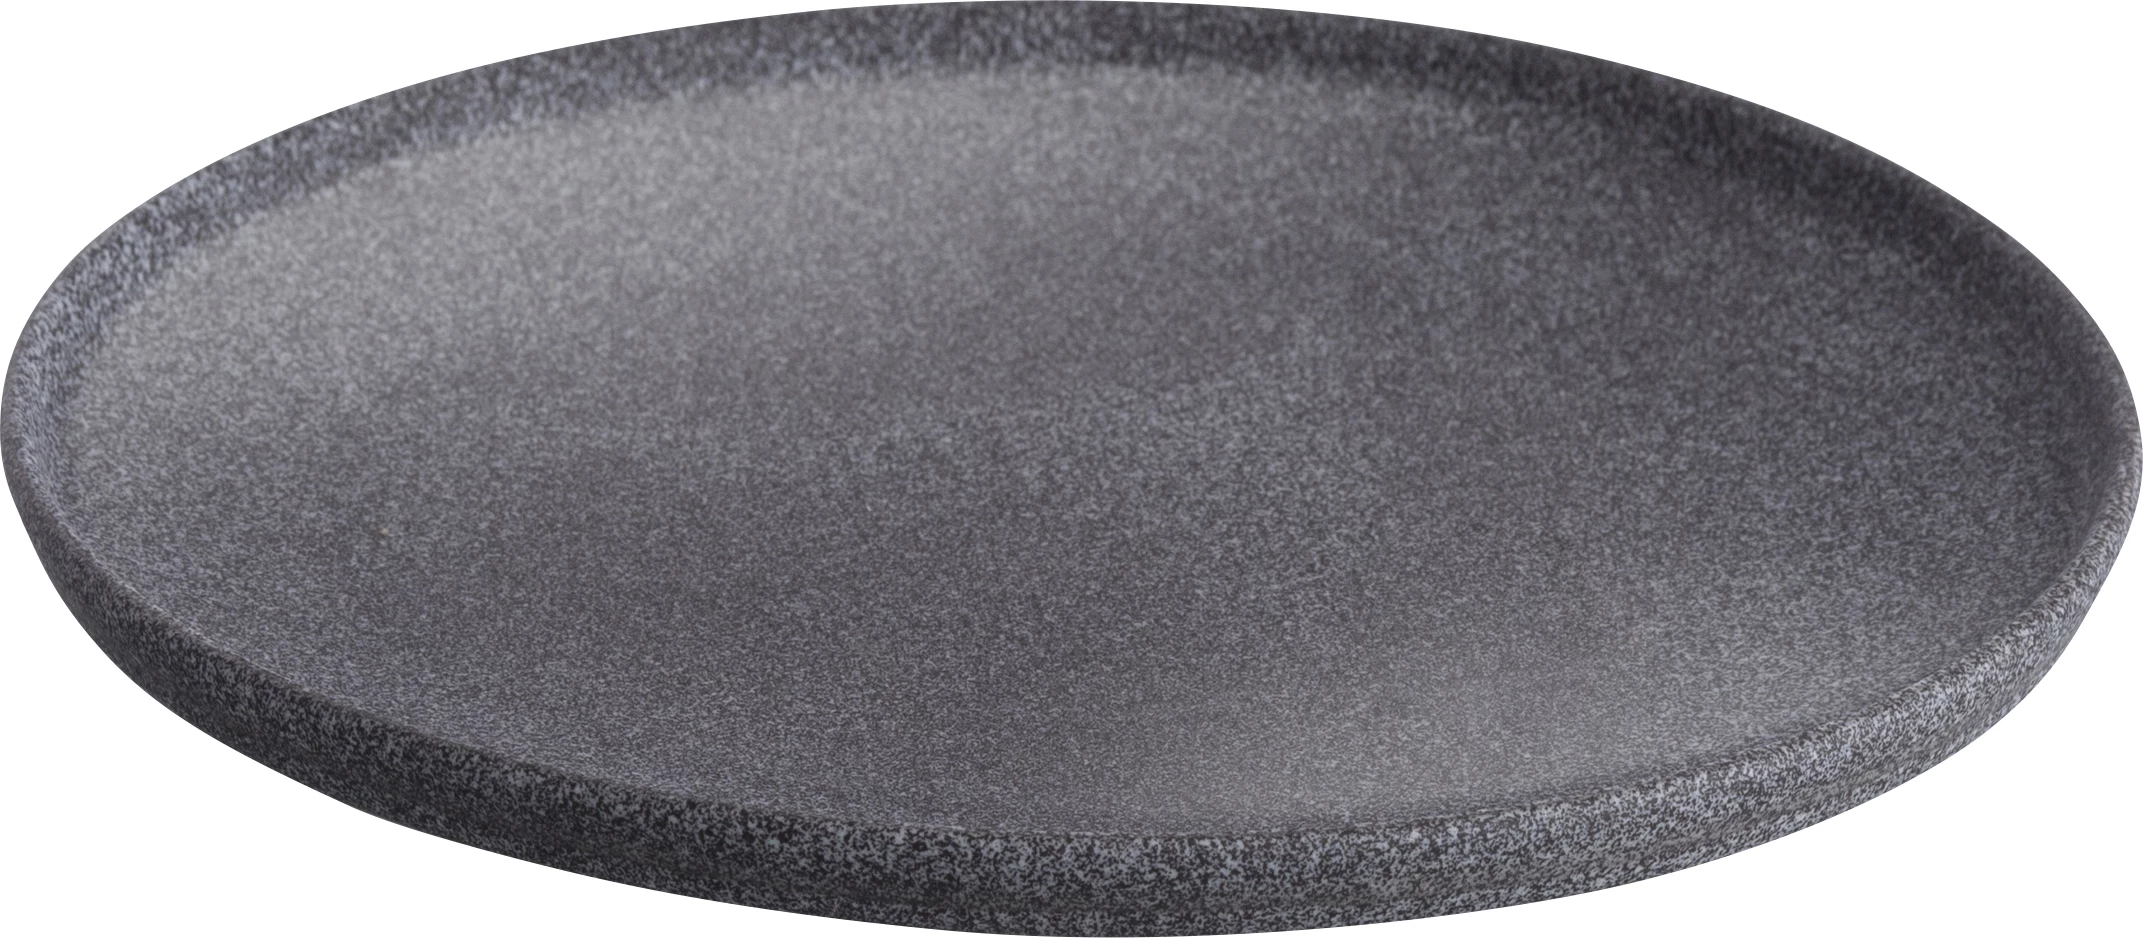 G. Benedikt Granit tallerken uden fane, mørk grå, ø26 cm